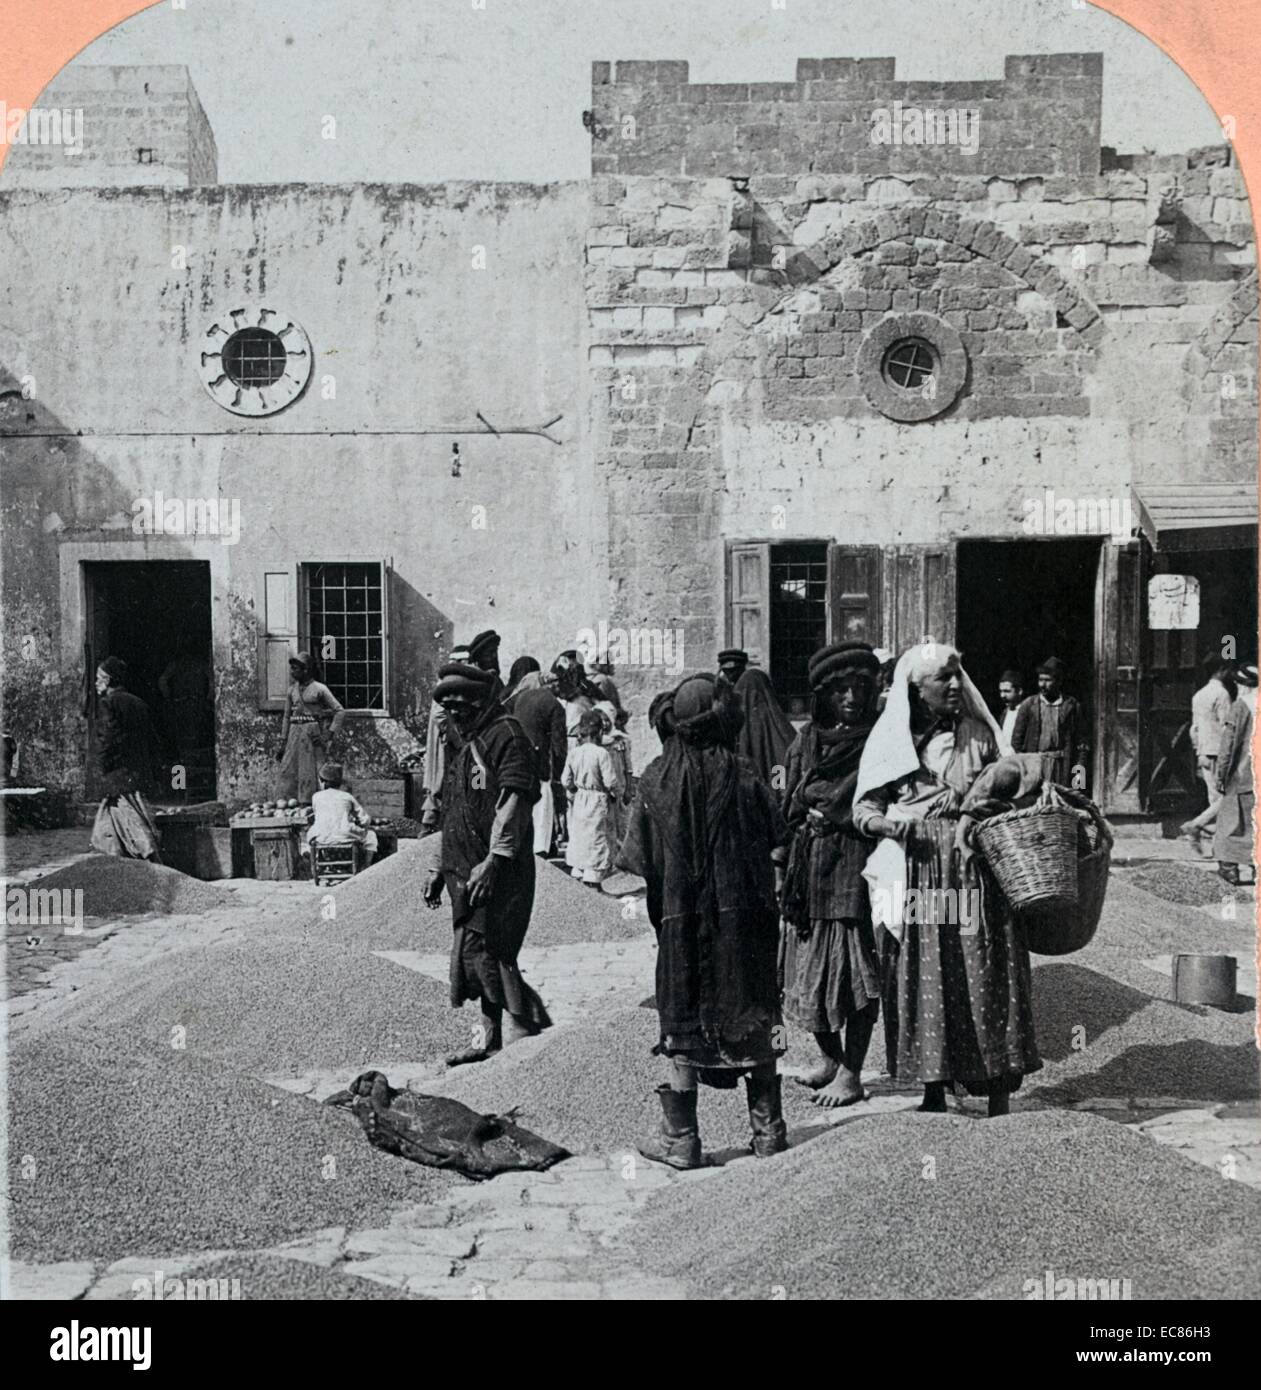 Fotografia di arabi nel mercato del grano di Haifa in Palestina. Datata 1910 Foto Stock